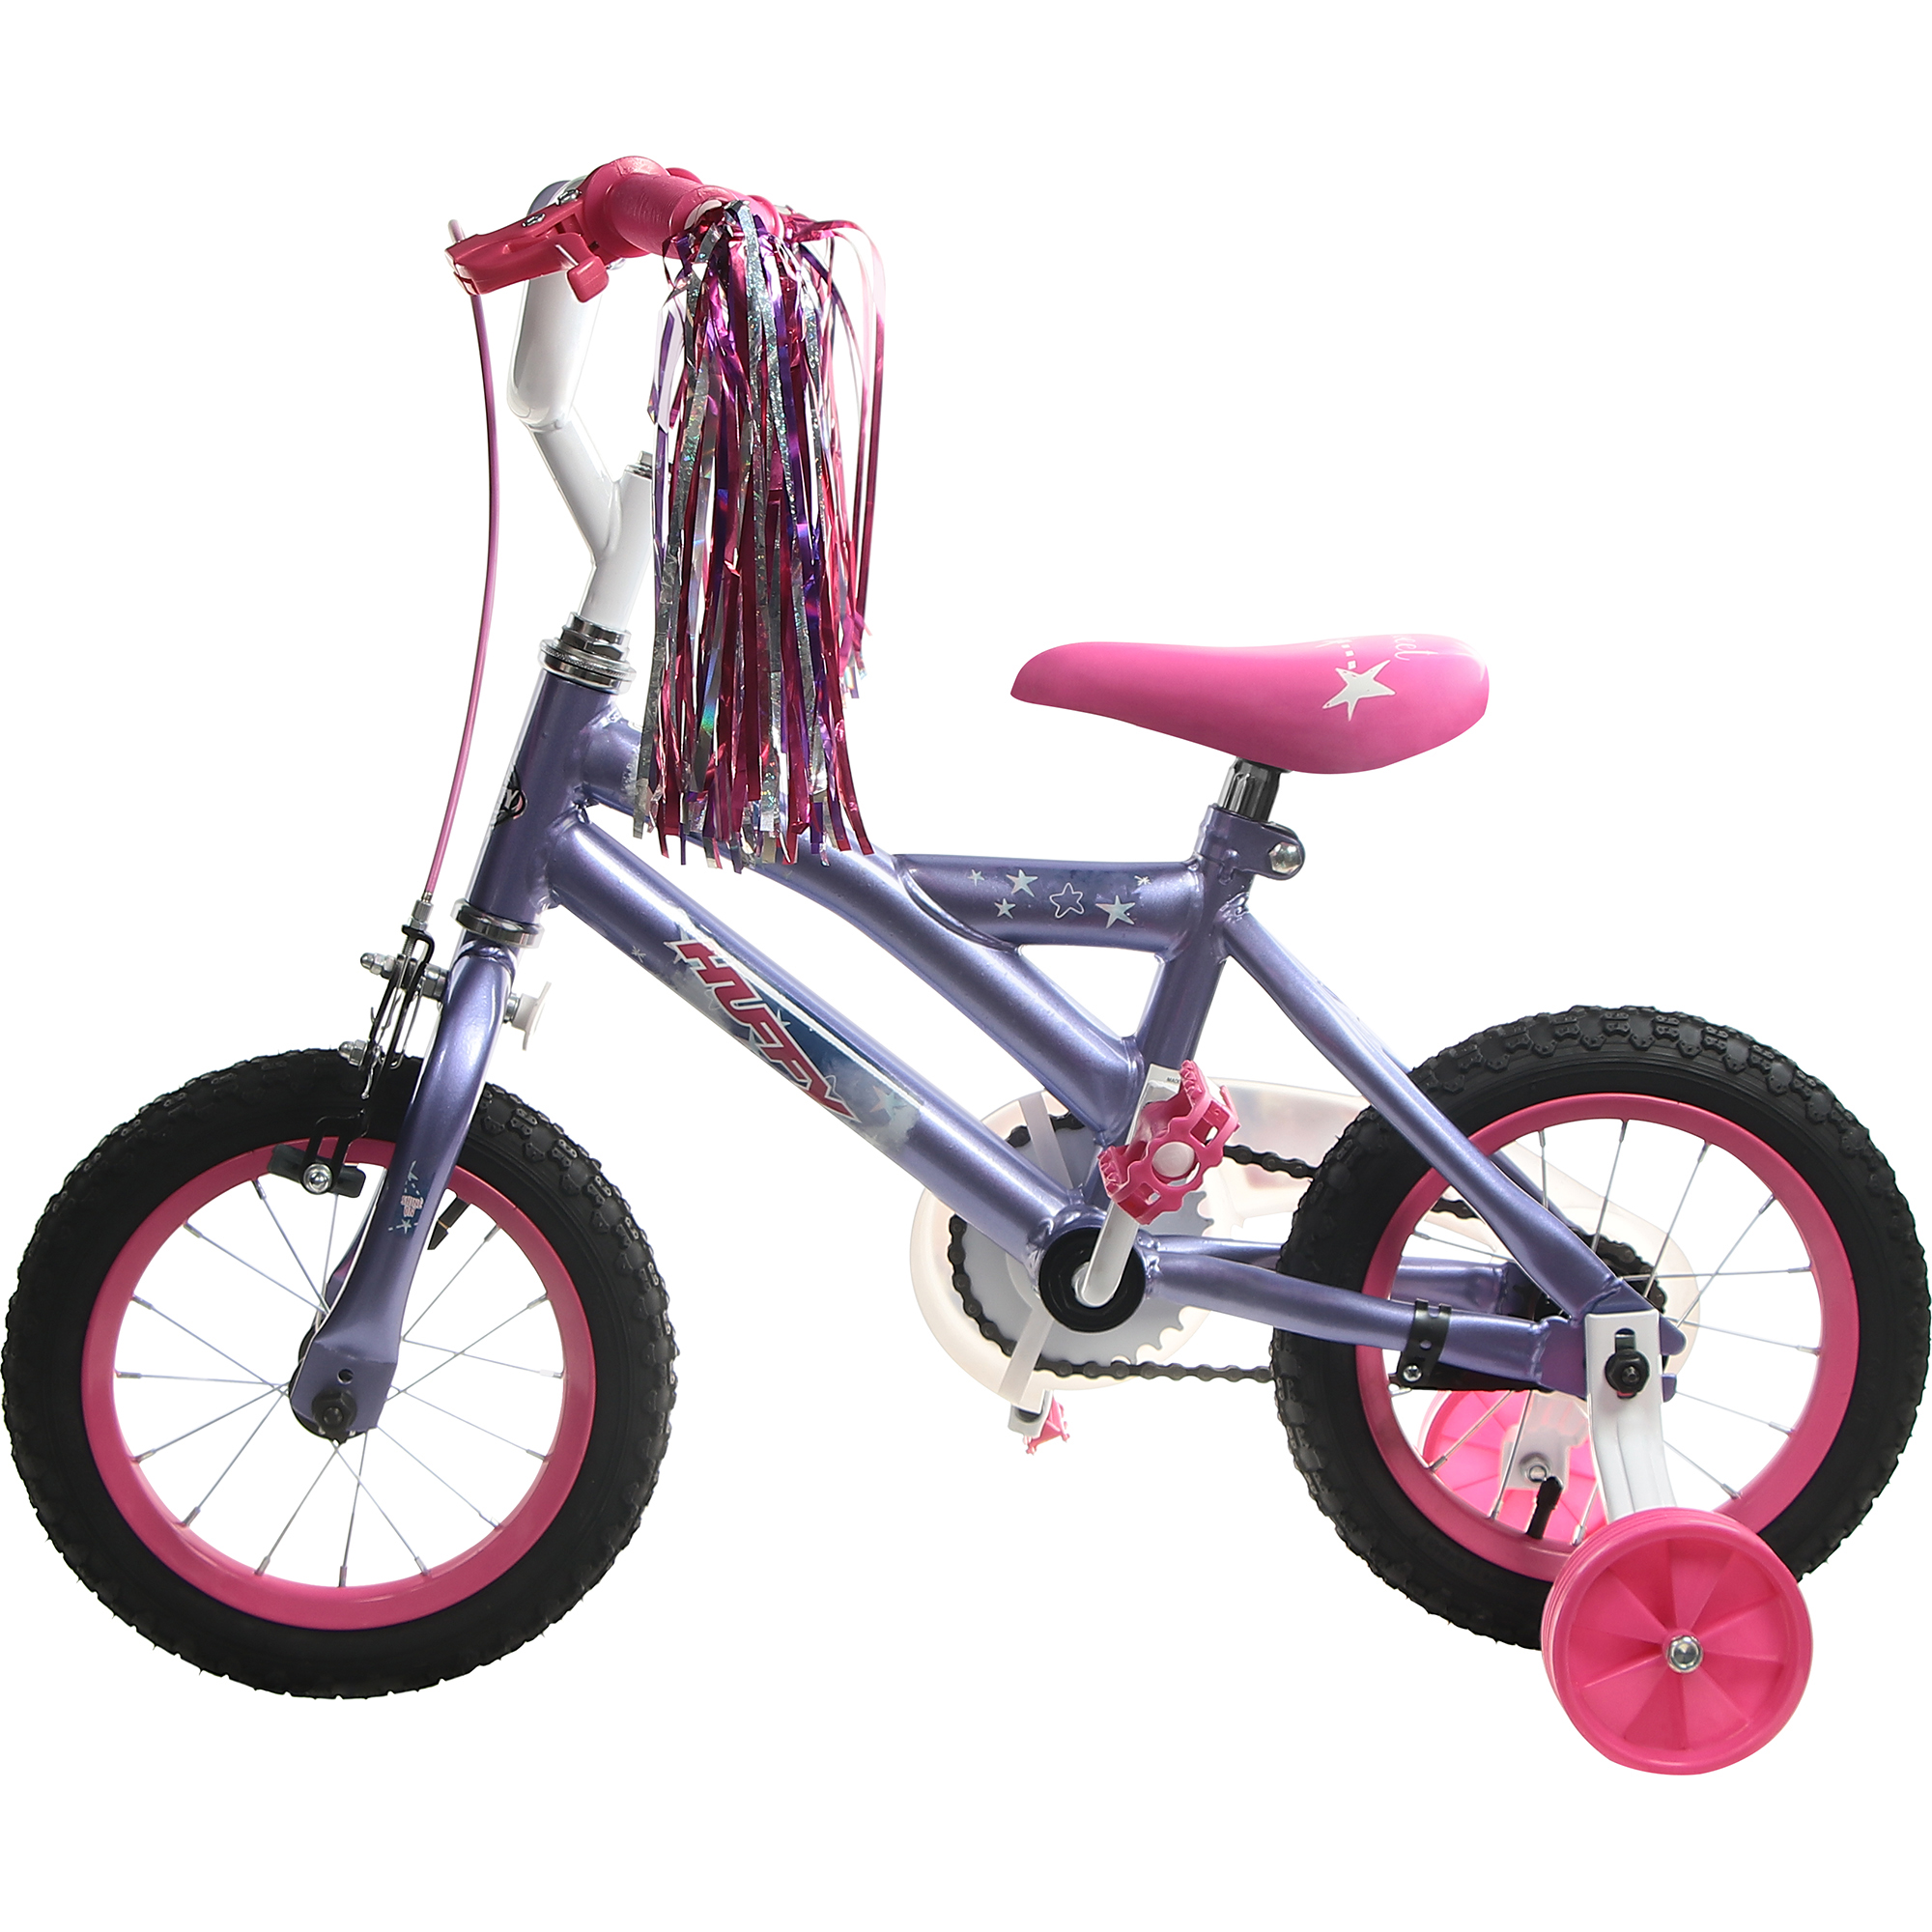 Велосипед детский Huffy So sweet, 12, для девочек велосипед детский huffy сreme soda белый 16 дюймов для девочек